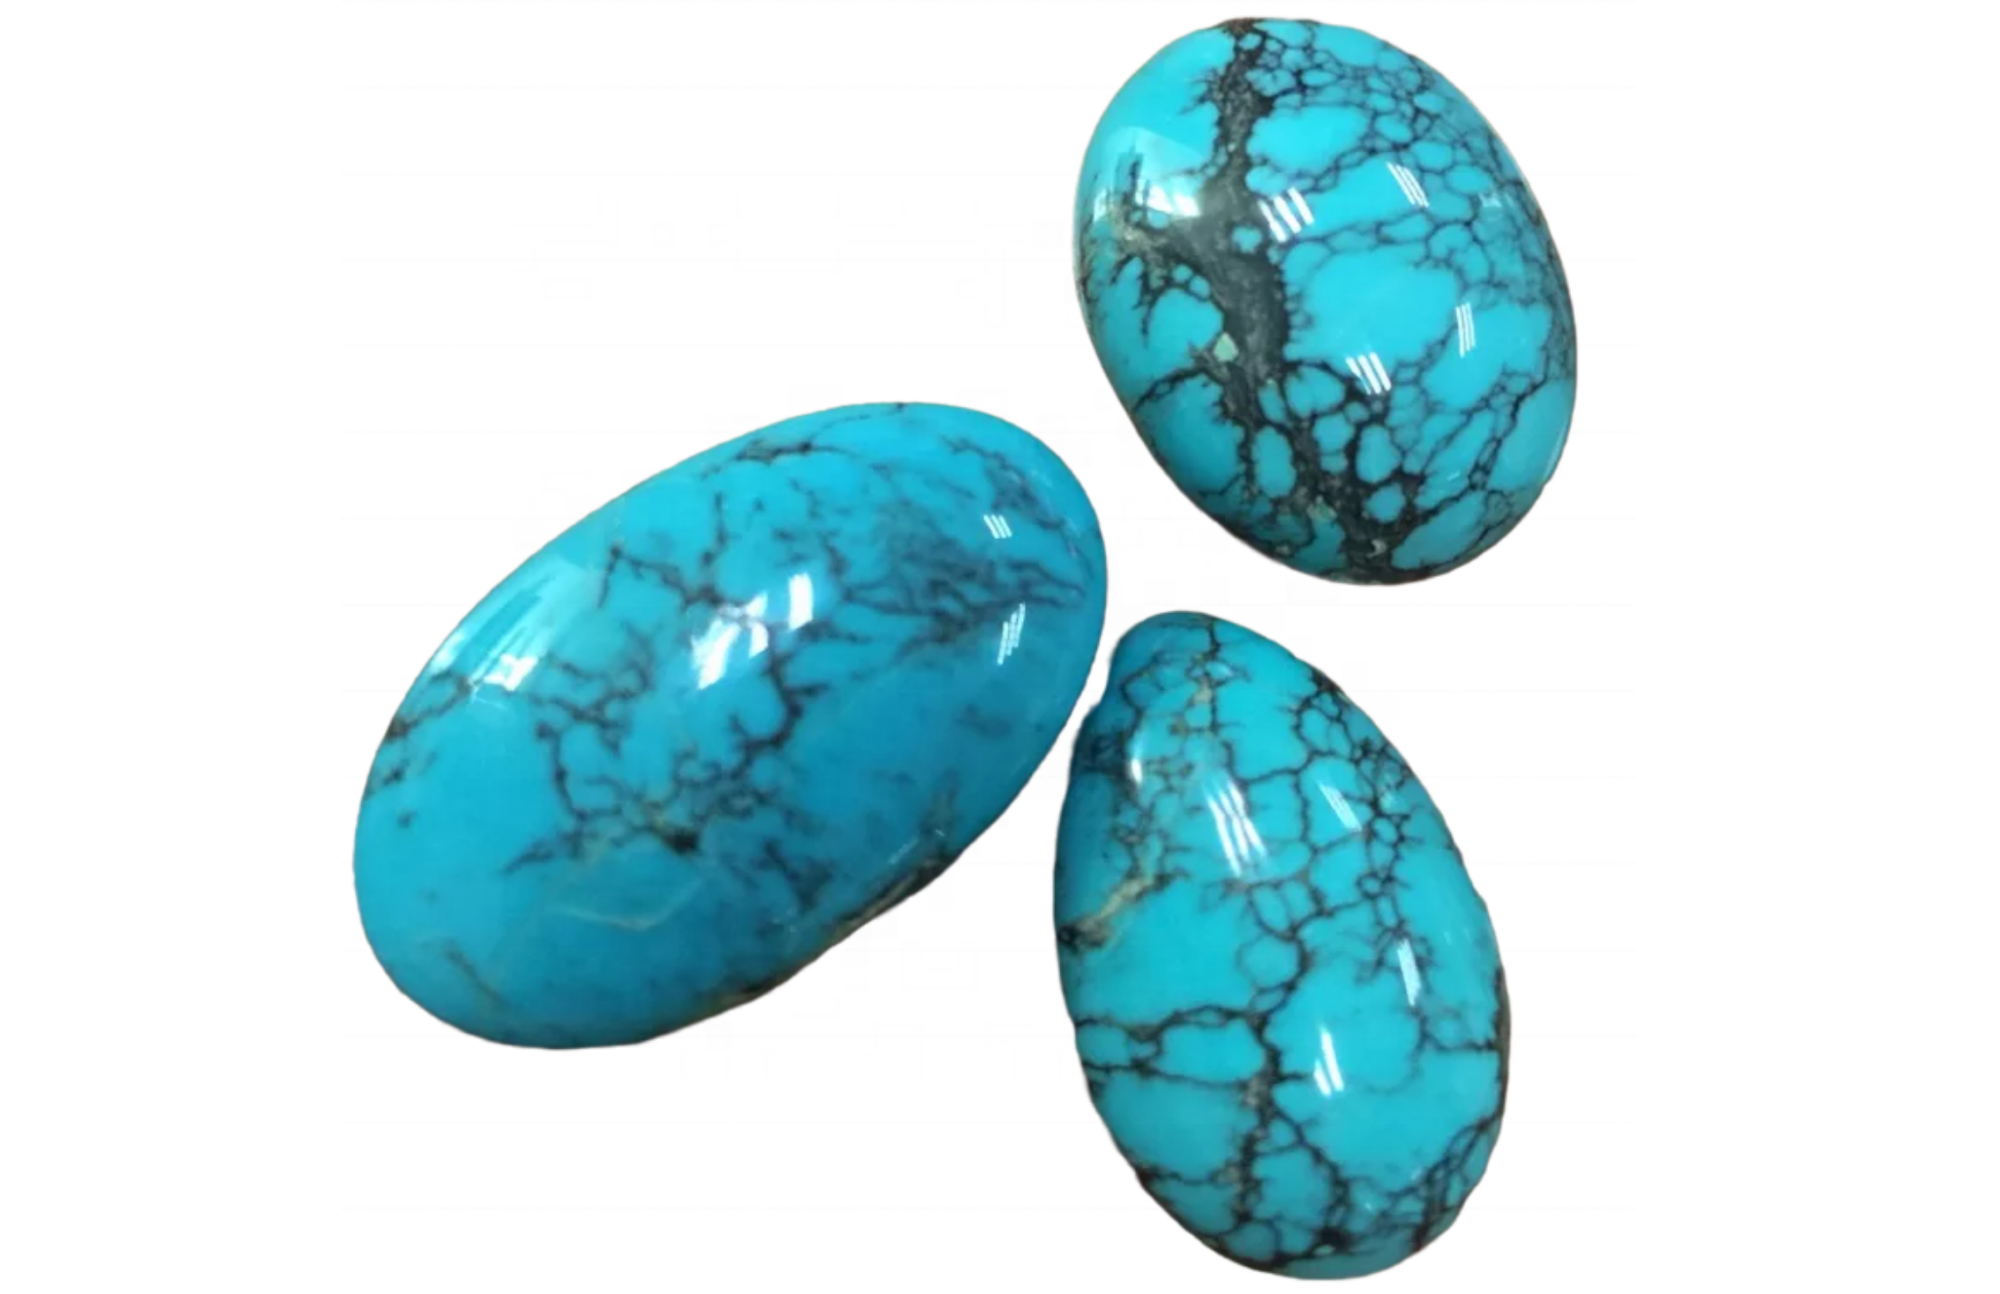 Three turquoise stones